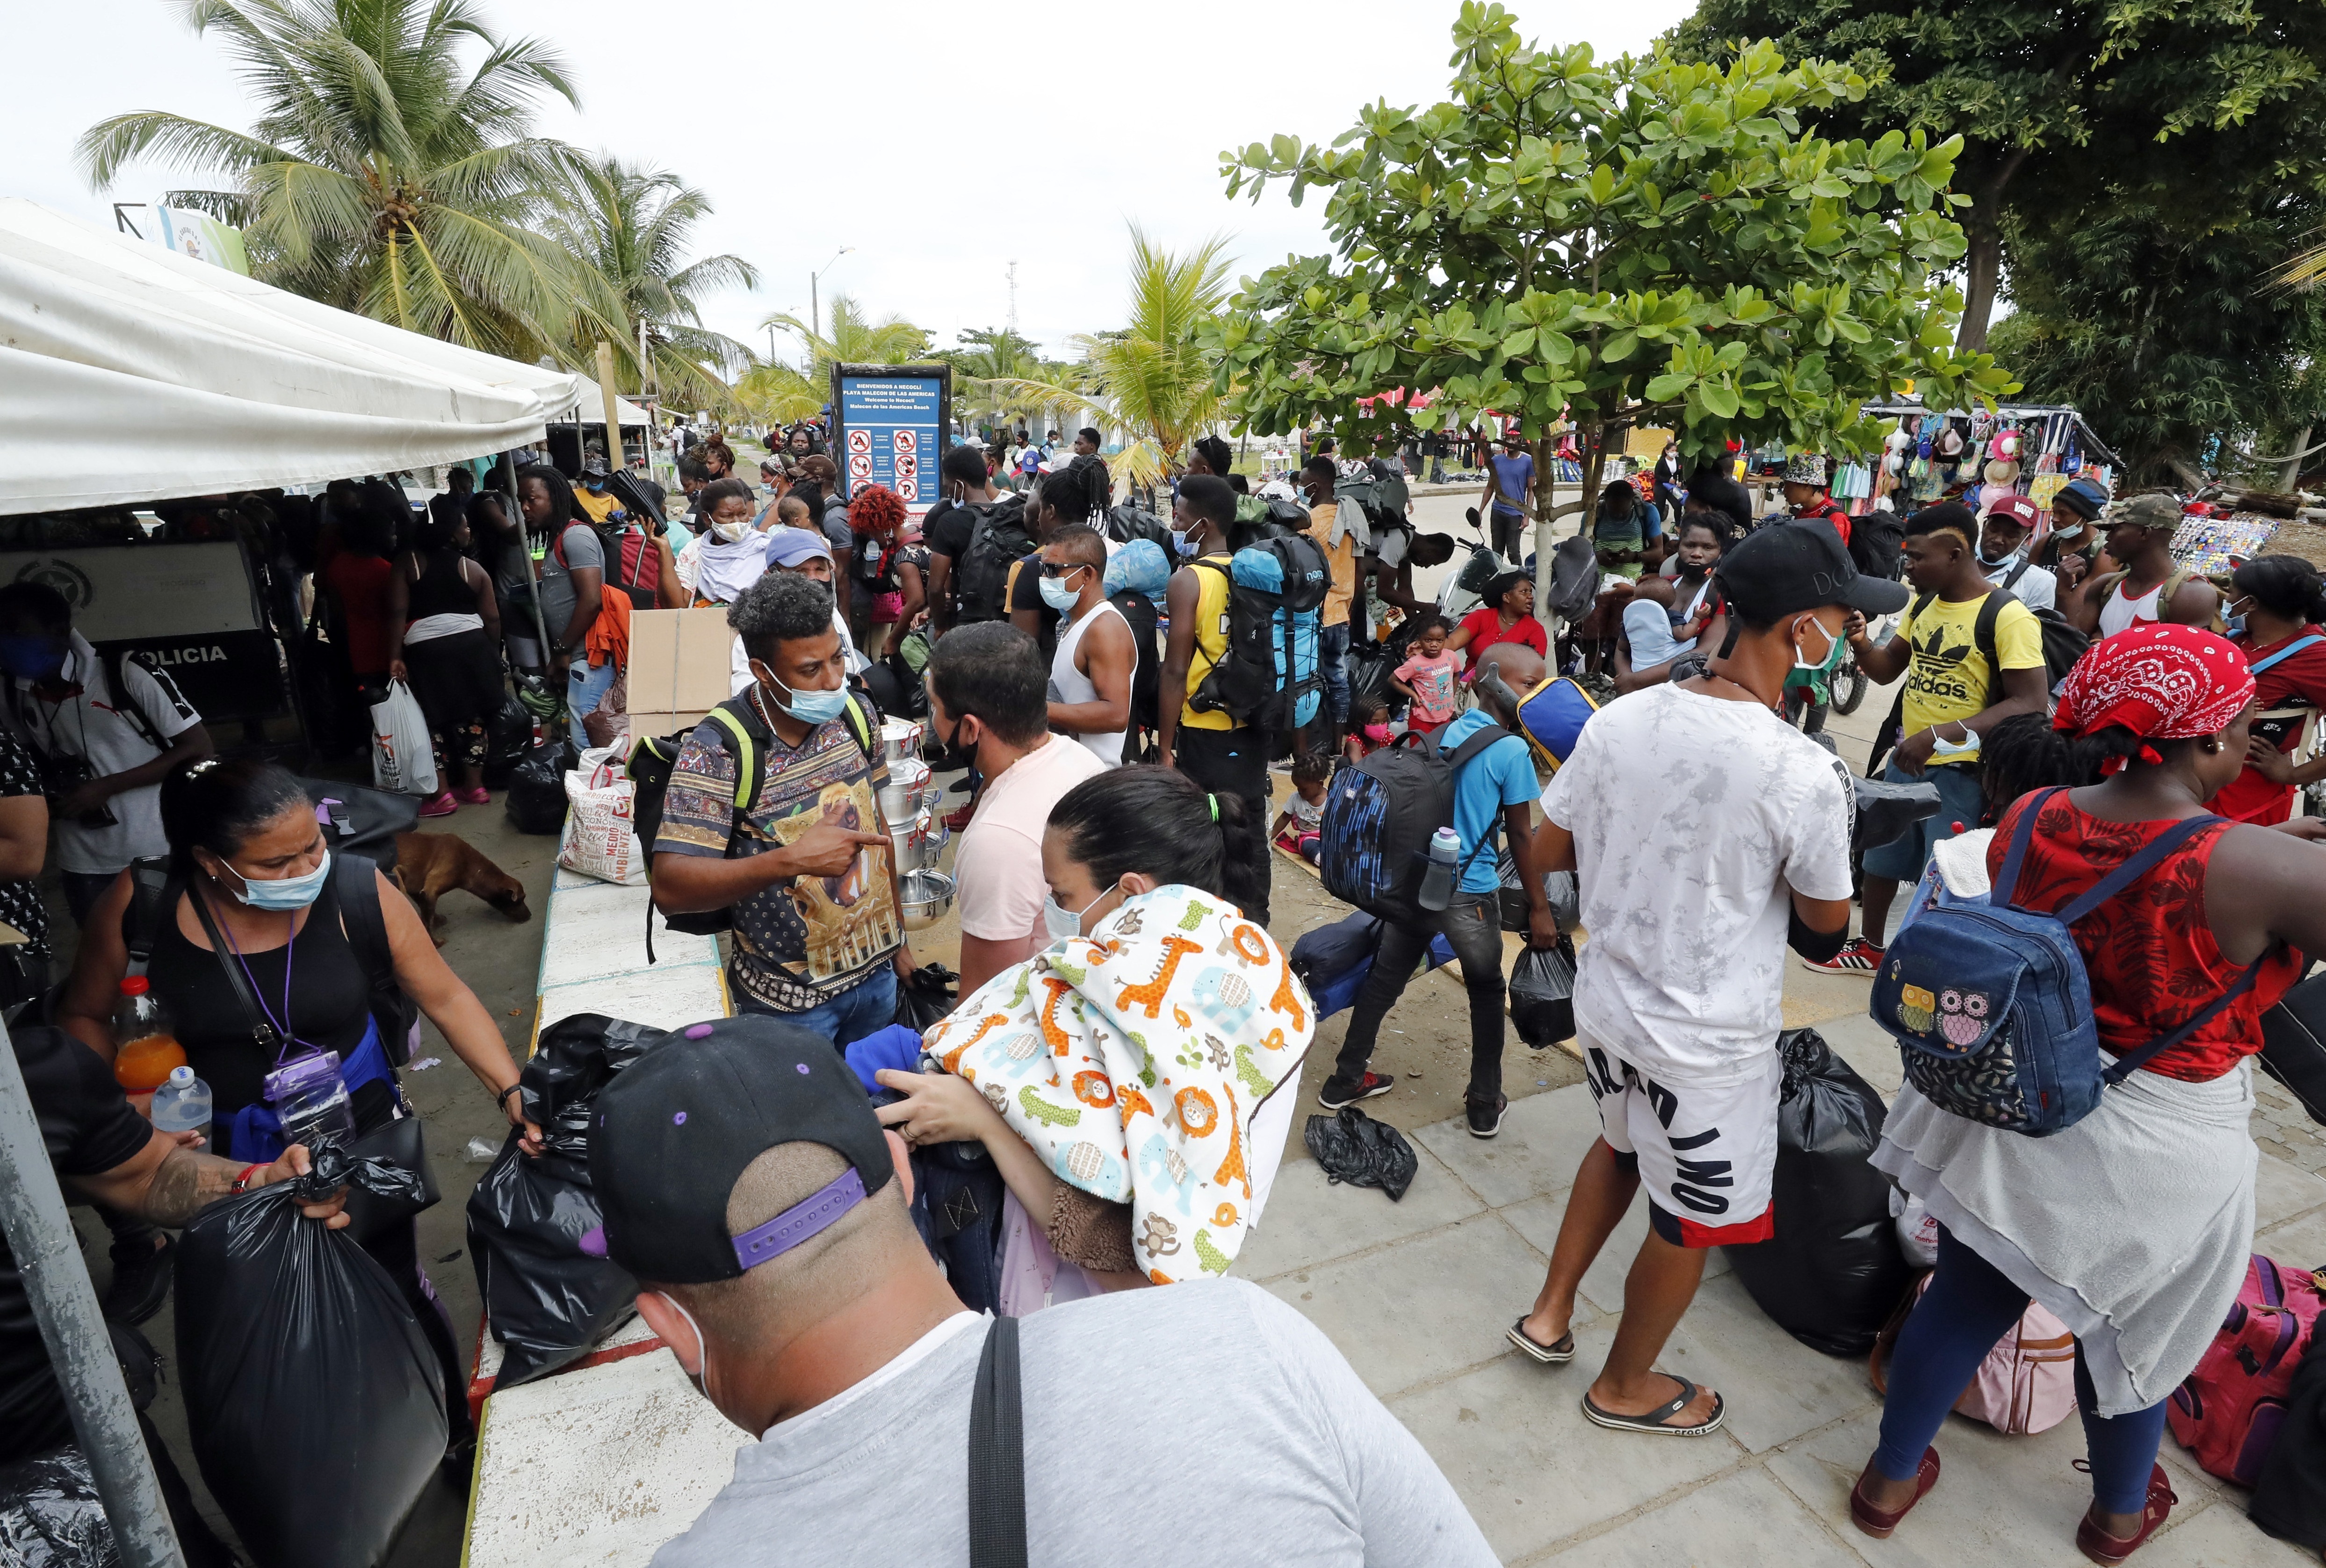 Al menos 1.500 migrantes haitianos están tratando de cruzar diariamente la frontera entre Ecuador y Colombia, según la Terminal de Transportes de Cali. EFE/ Mauricio Duenas Castañeda/Archivo
